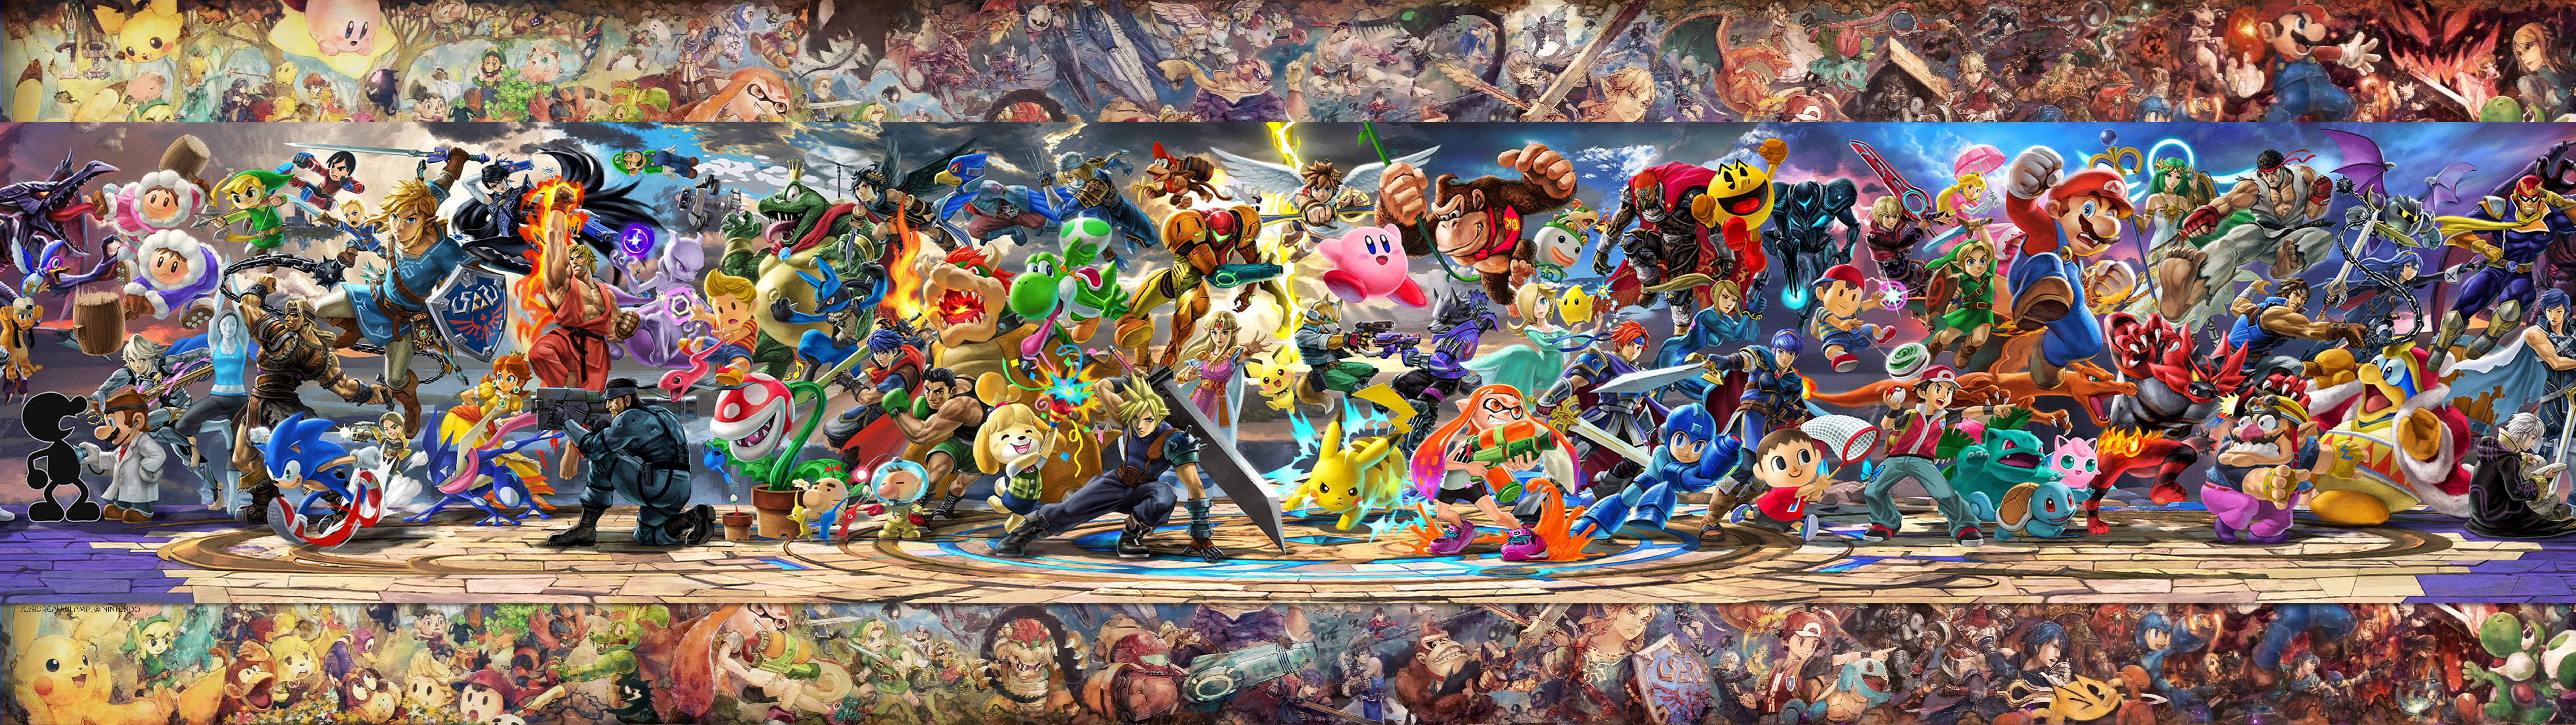 Super Smash Bros Ultimate Battle Banner Wallpaper